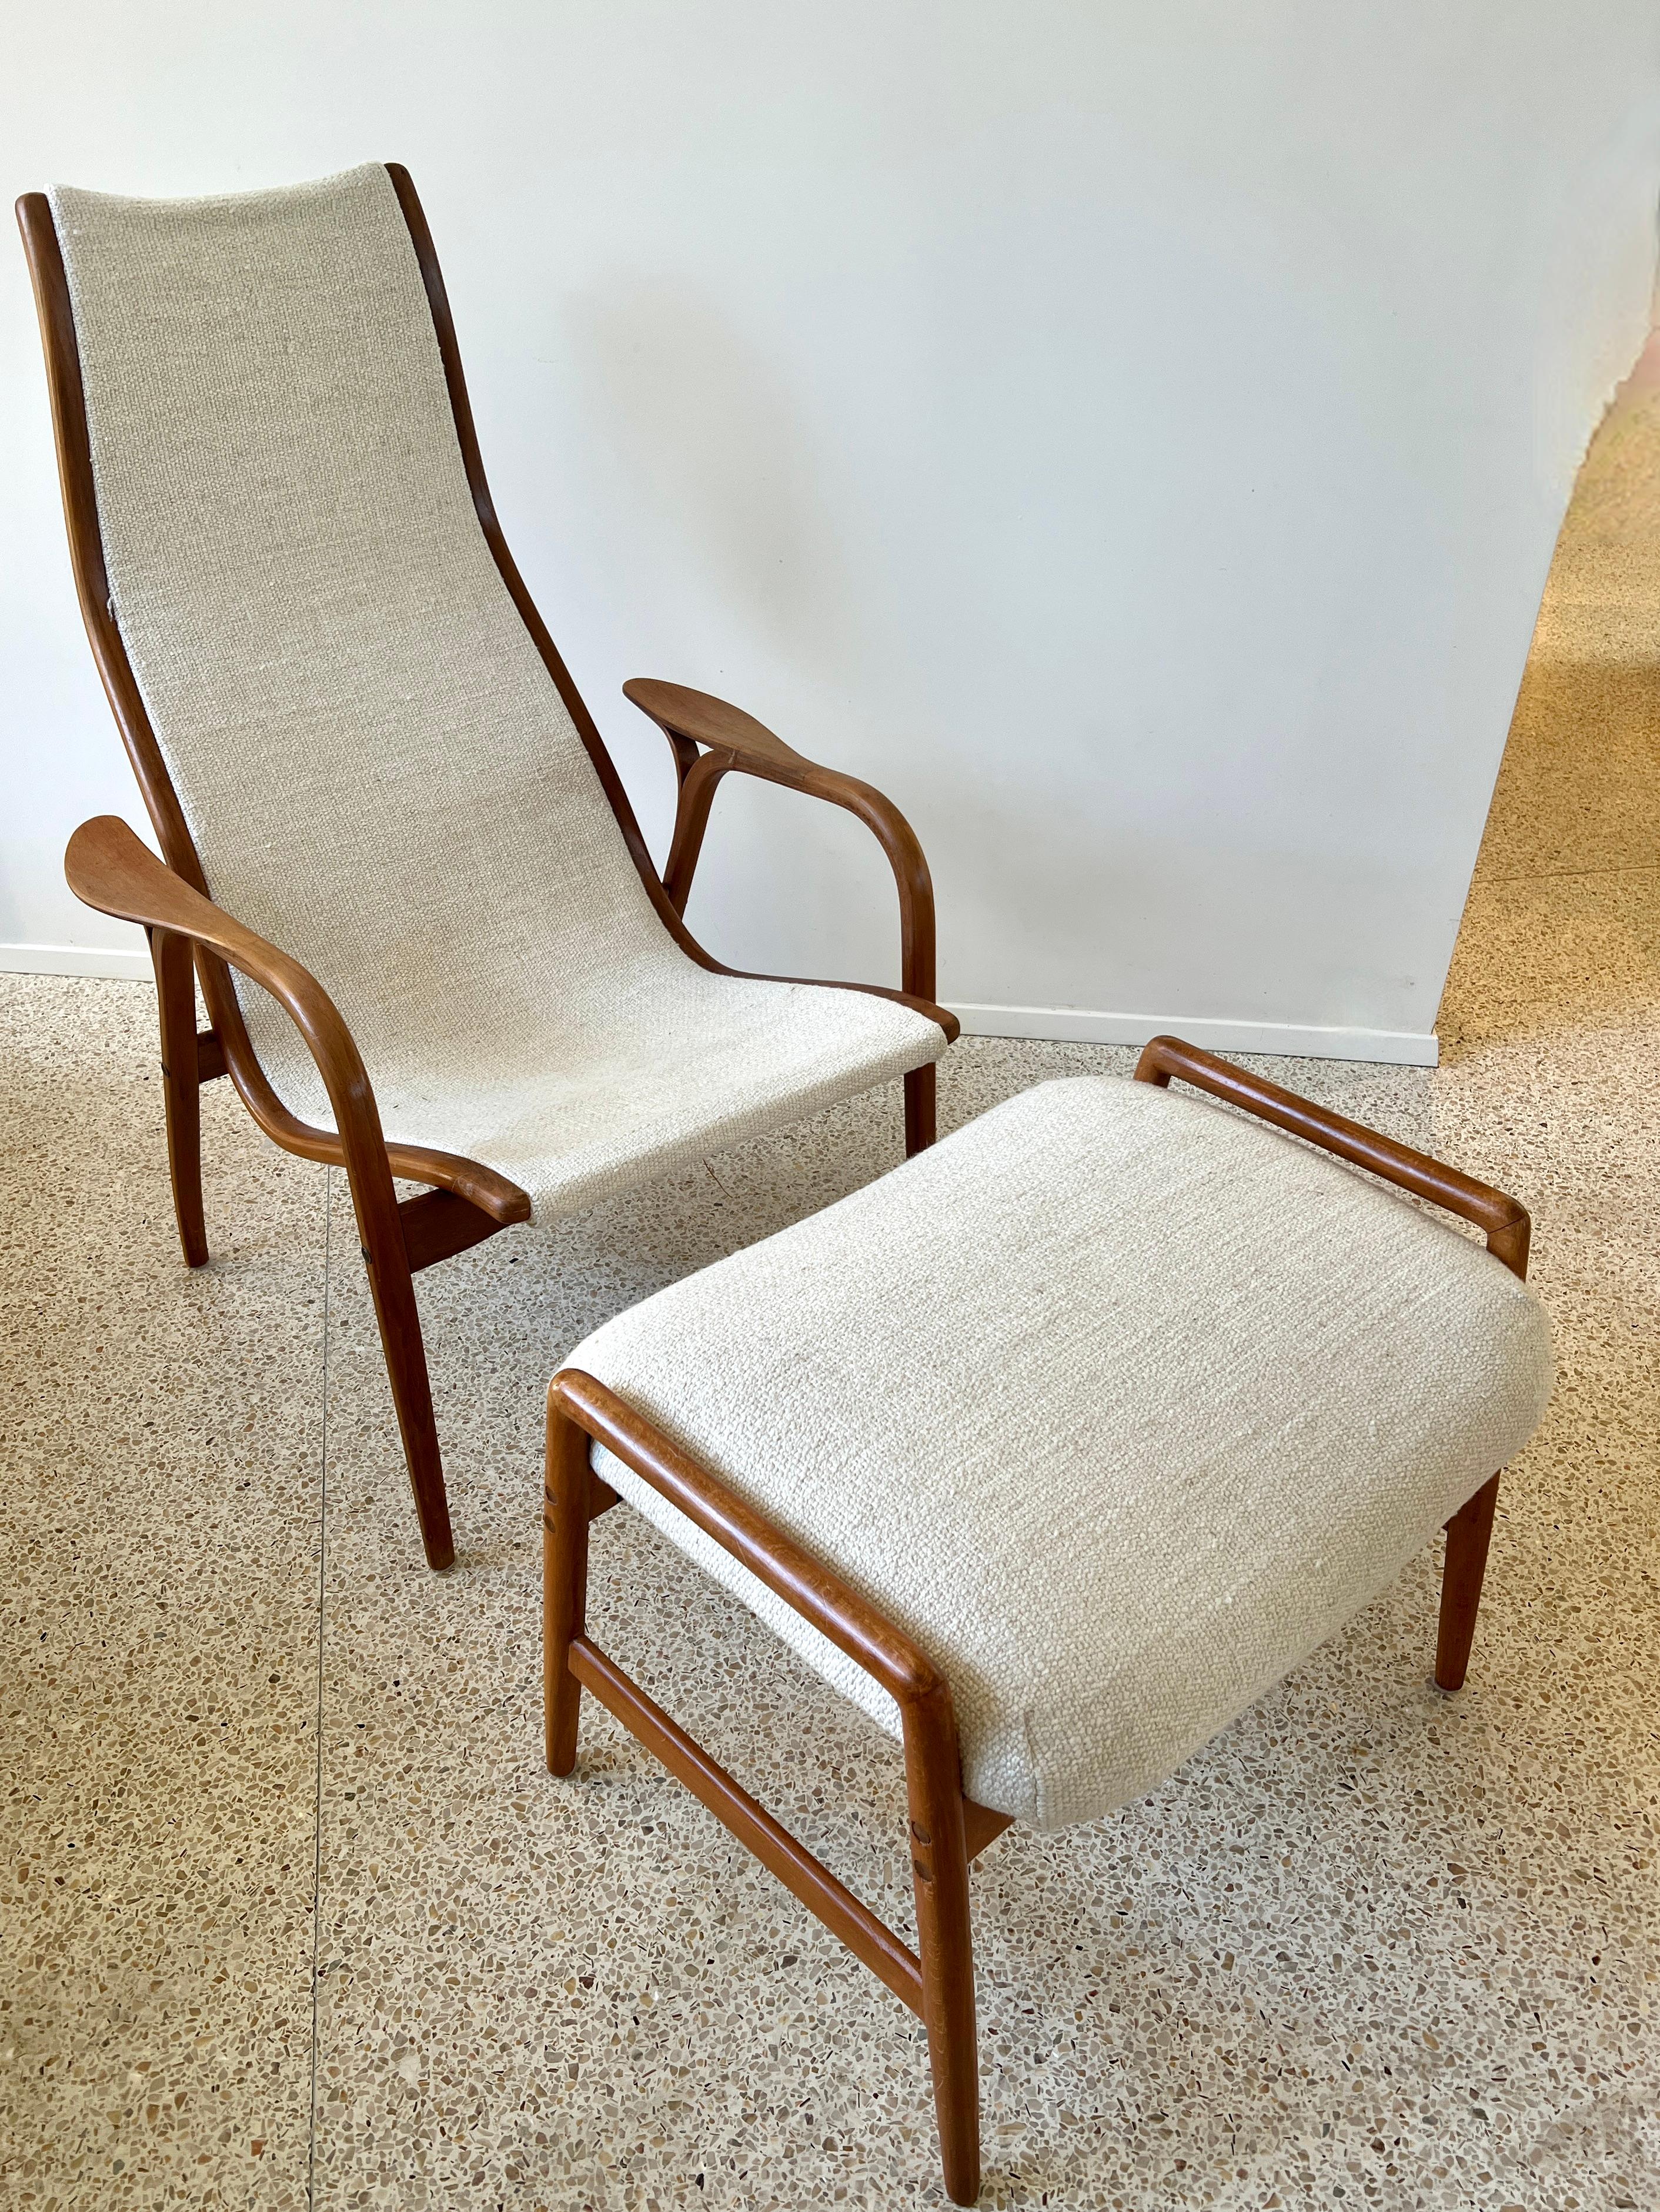 La chaise Lamino, classique et intemporelle, a été conçue par Yngve Ekstrom pour Swedese.

Bien que la chaise et l'ottoman / tabouret coordonné aient été conçus au milieu du 20e siècle, ils conservent leur style architectural moderne et emblématique